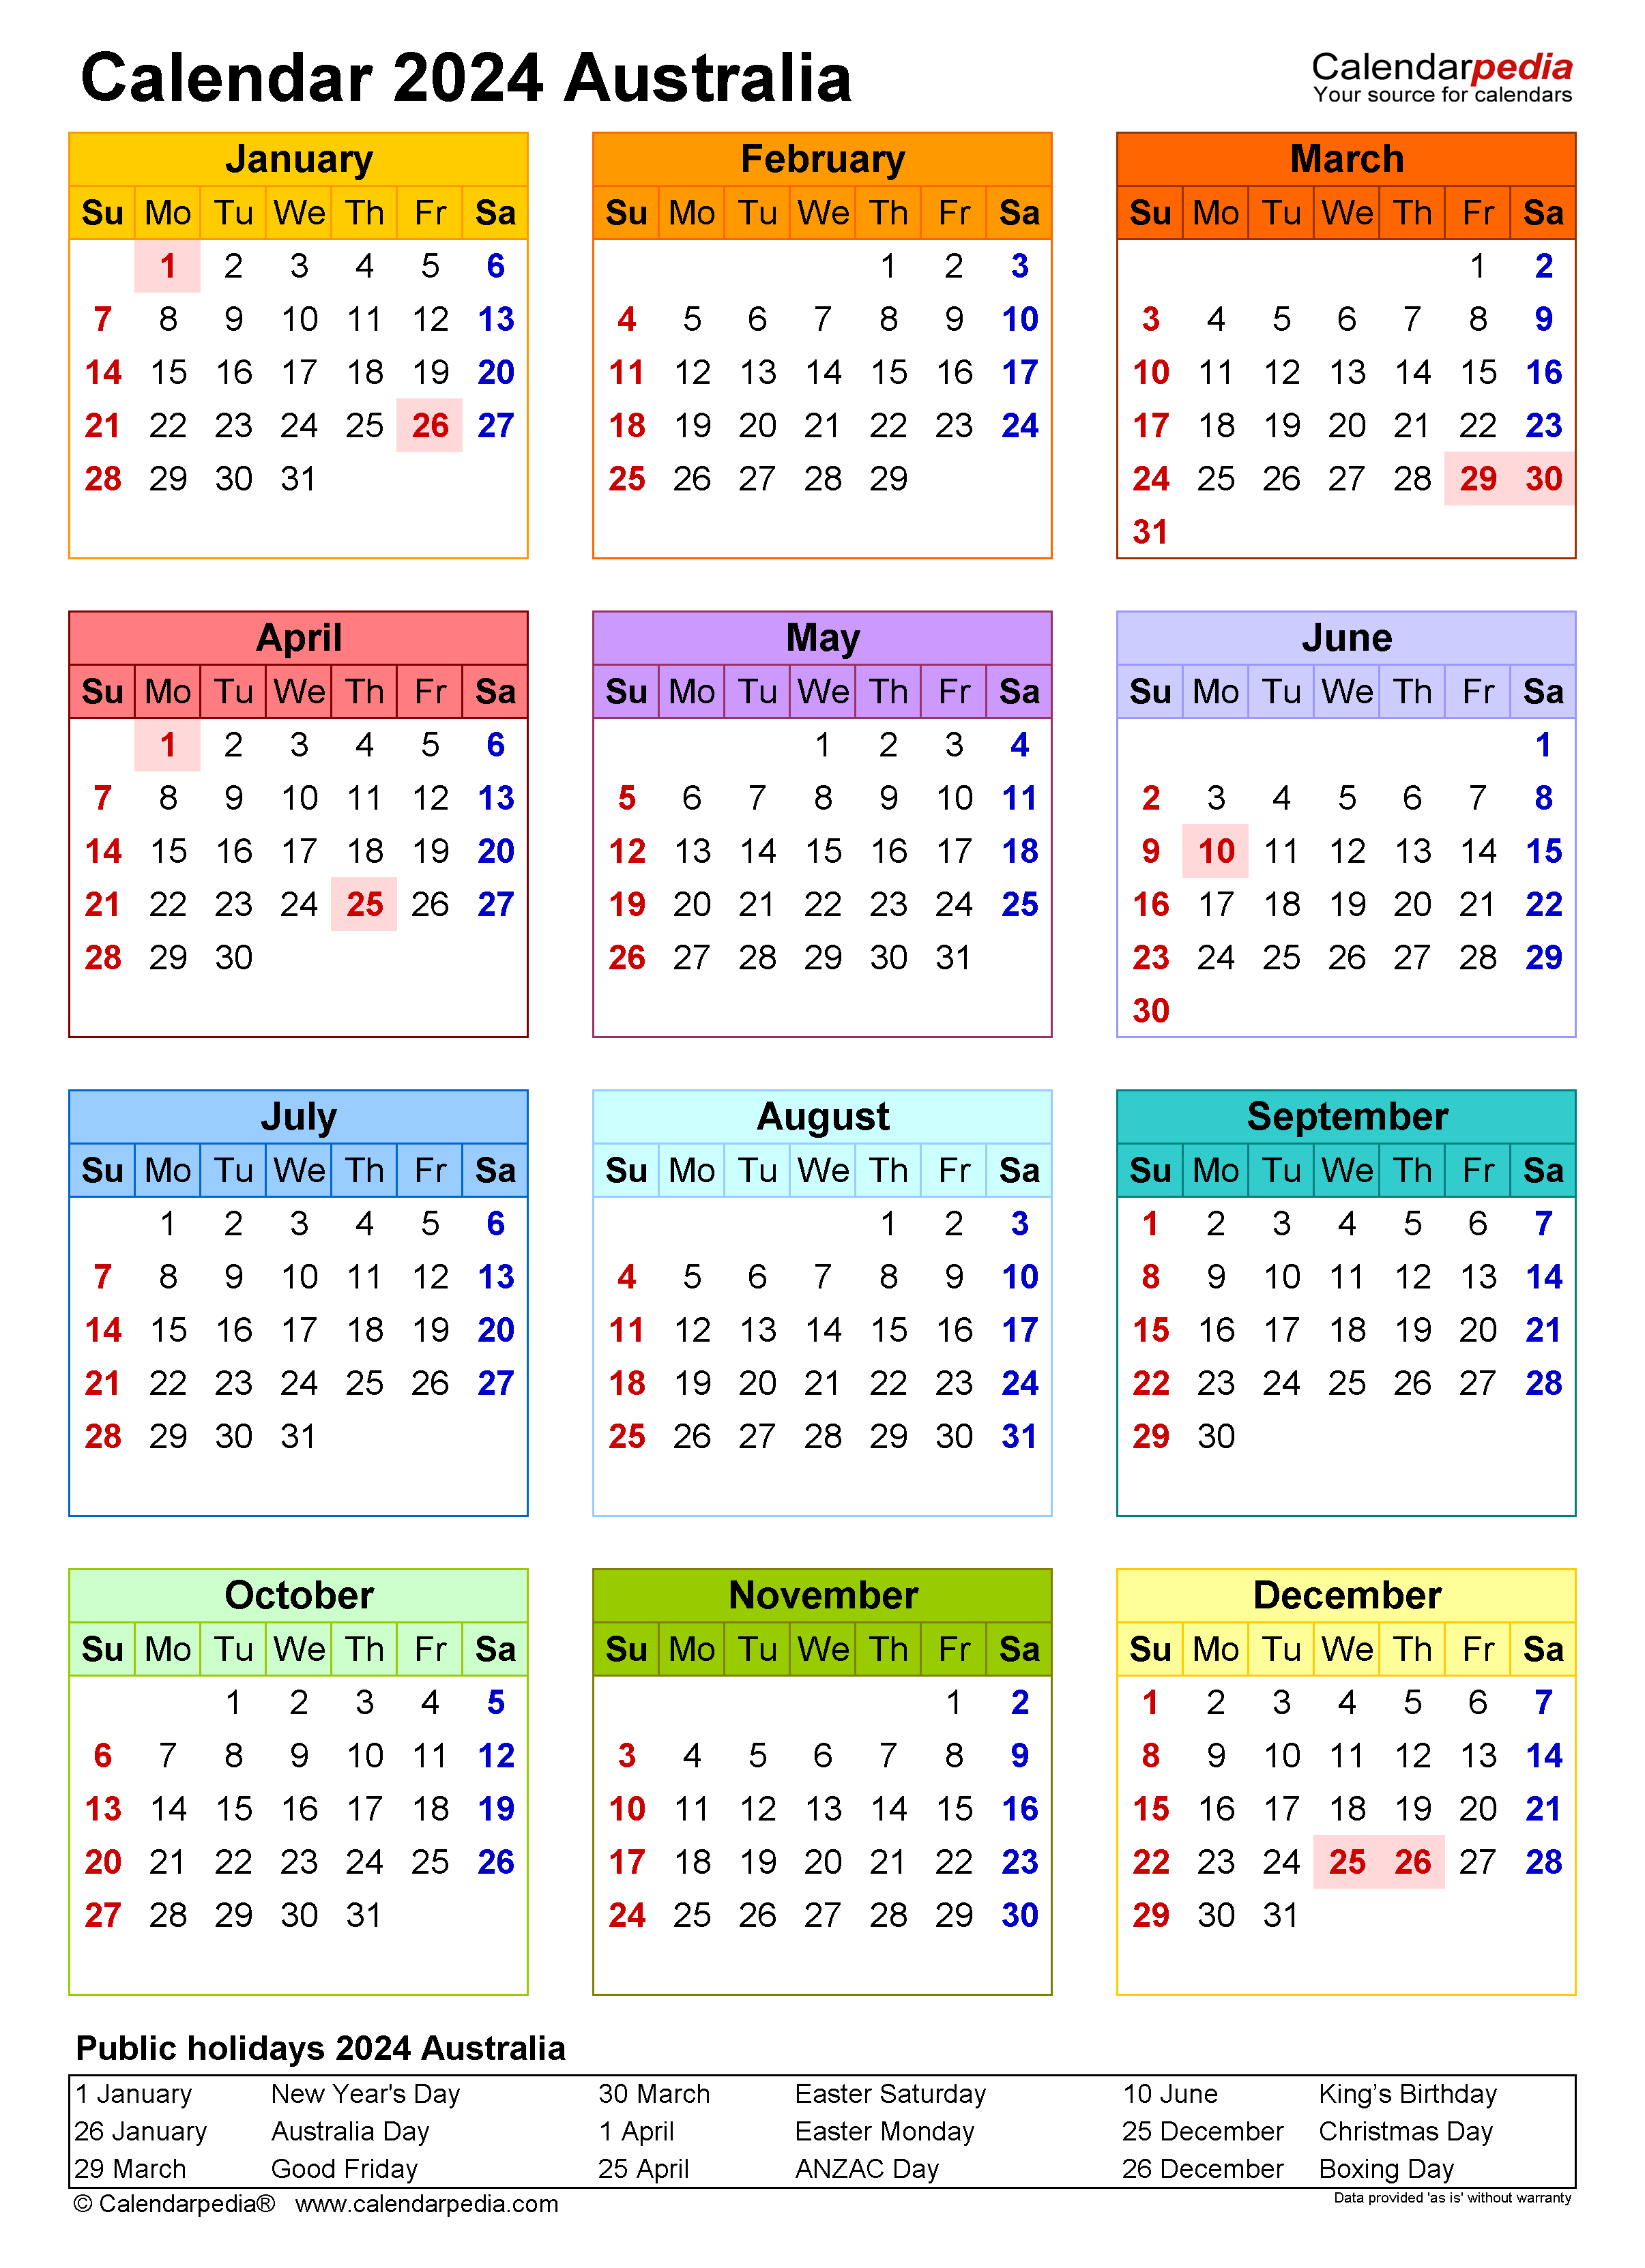 Free Printable Calendar 2024 Printable Calendar 2023 - Free Printable 2024 Calendar Australia Template